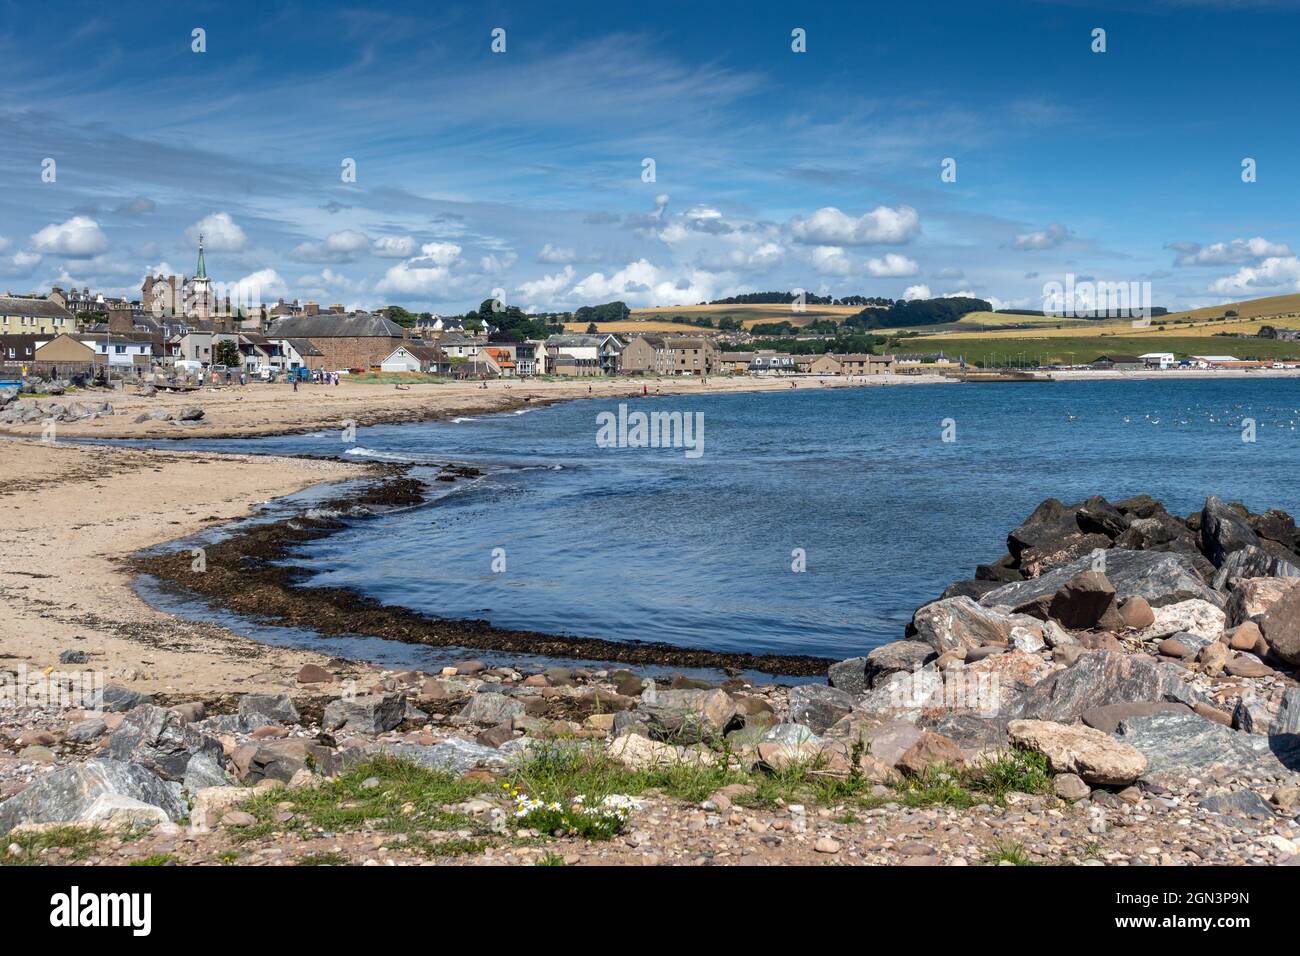 La baie et la plage à Stonehaven, une jolie ville portuaire au sud d'Aberdeen qui est une destination populaire sur le sentier côtier de l'Aberdeenshire. Banque D'Images